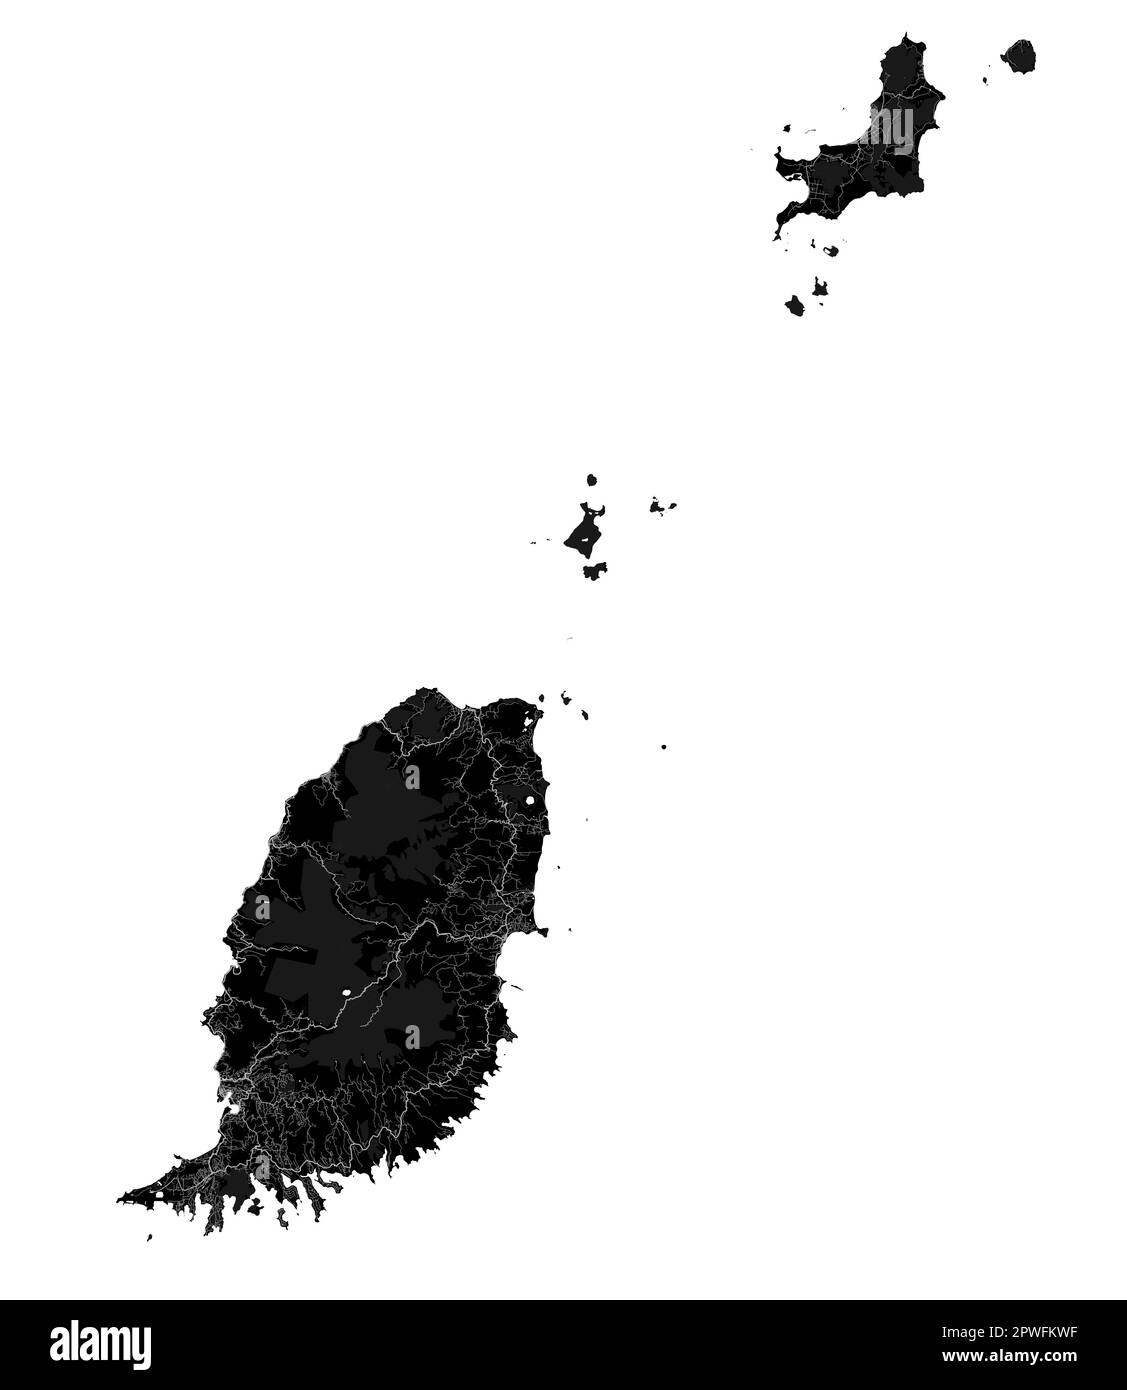 Carte de Grenade noire, pays des îles des Caraïbes. Carte détaillée avec frontière administrative, littoral, mer et forêts, villes et routes. Illustration de Vecteur